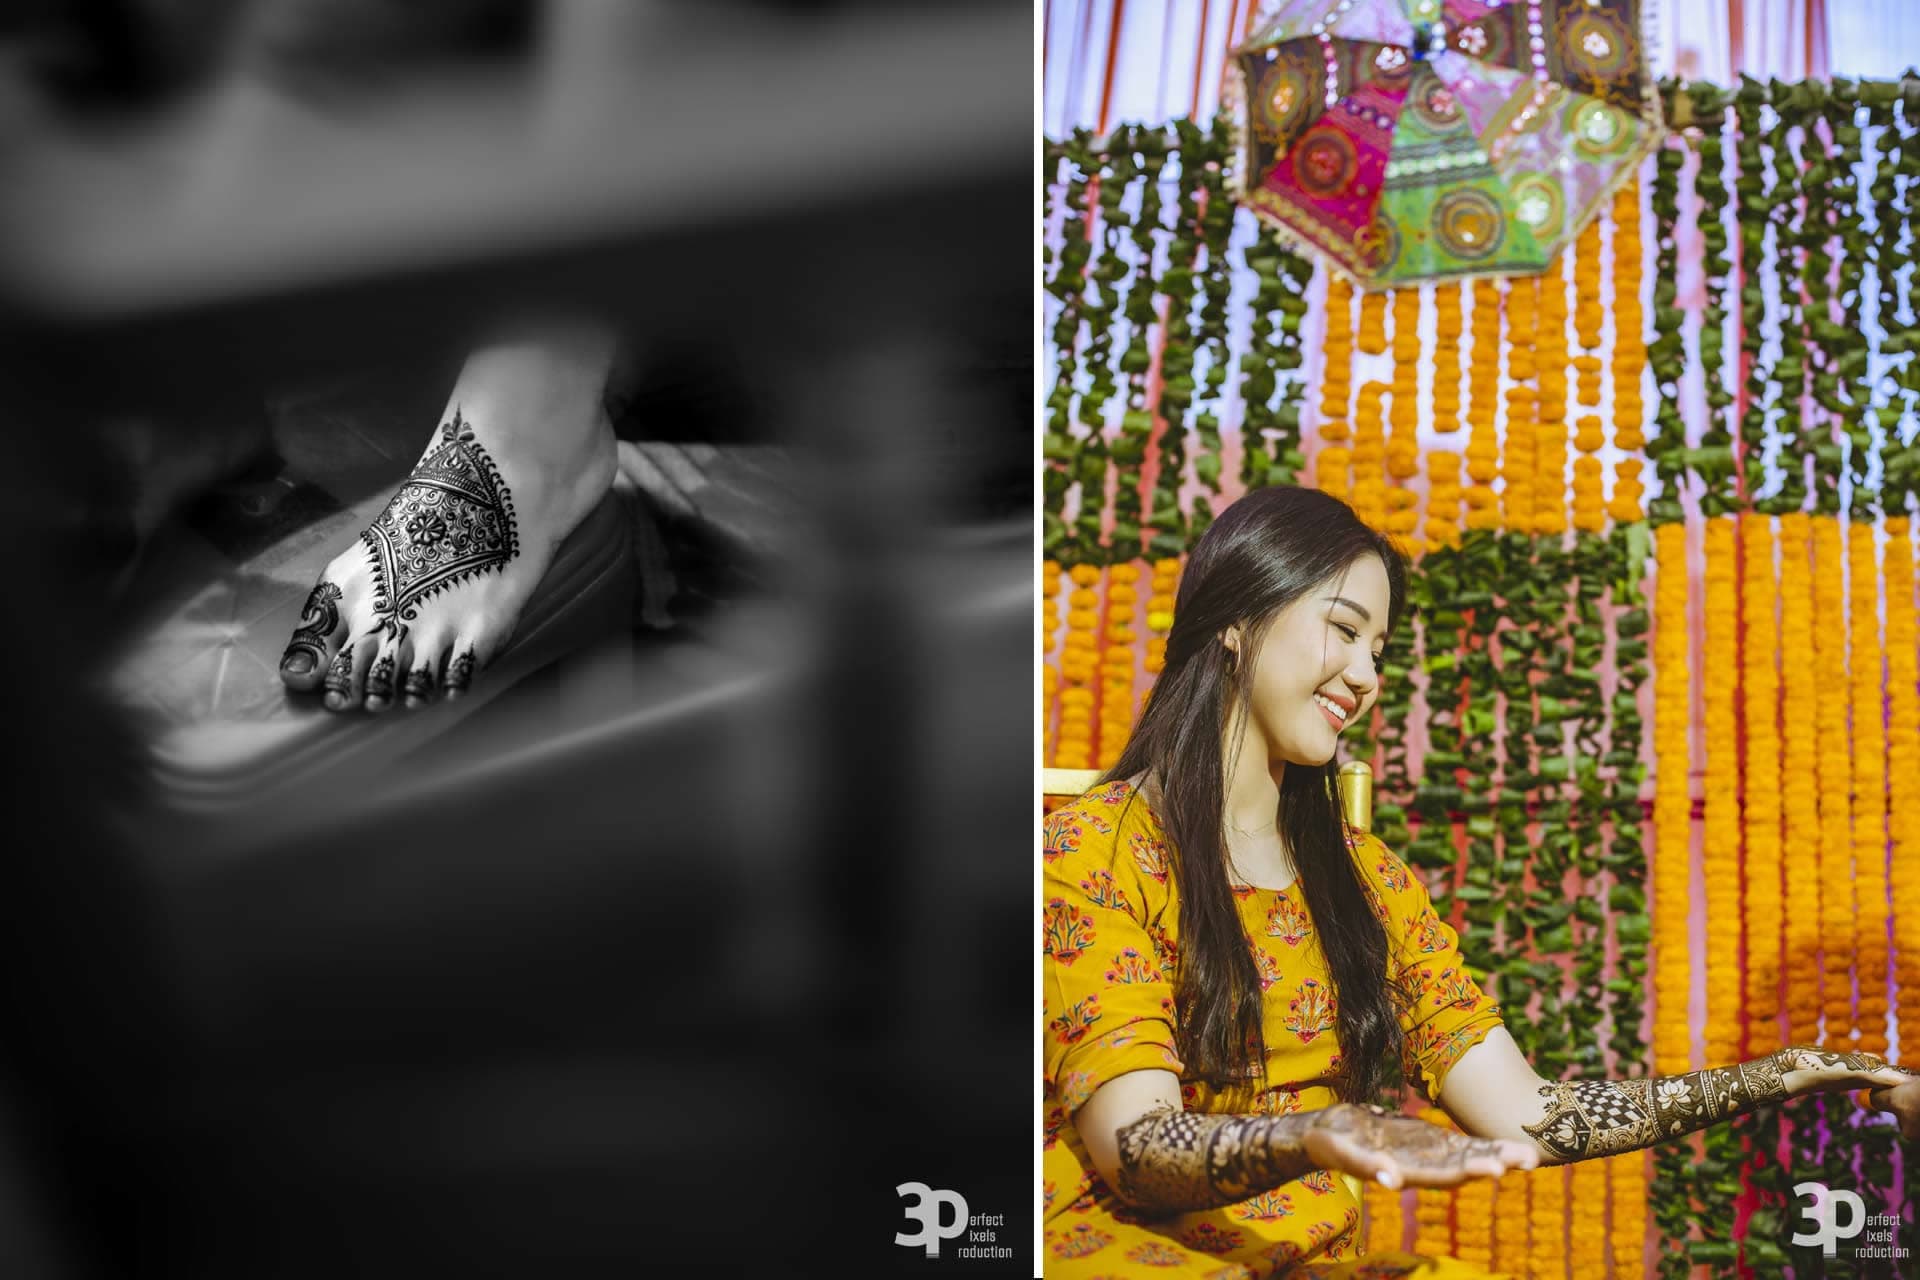 3P_Wedding_Chandigarh_Stories_Prabir_Sera